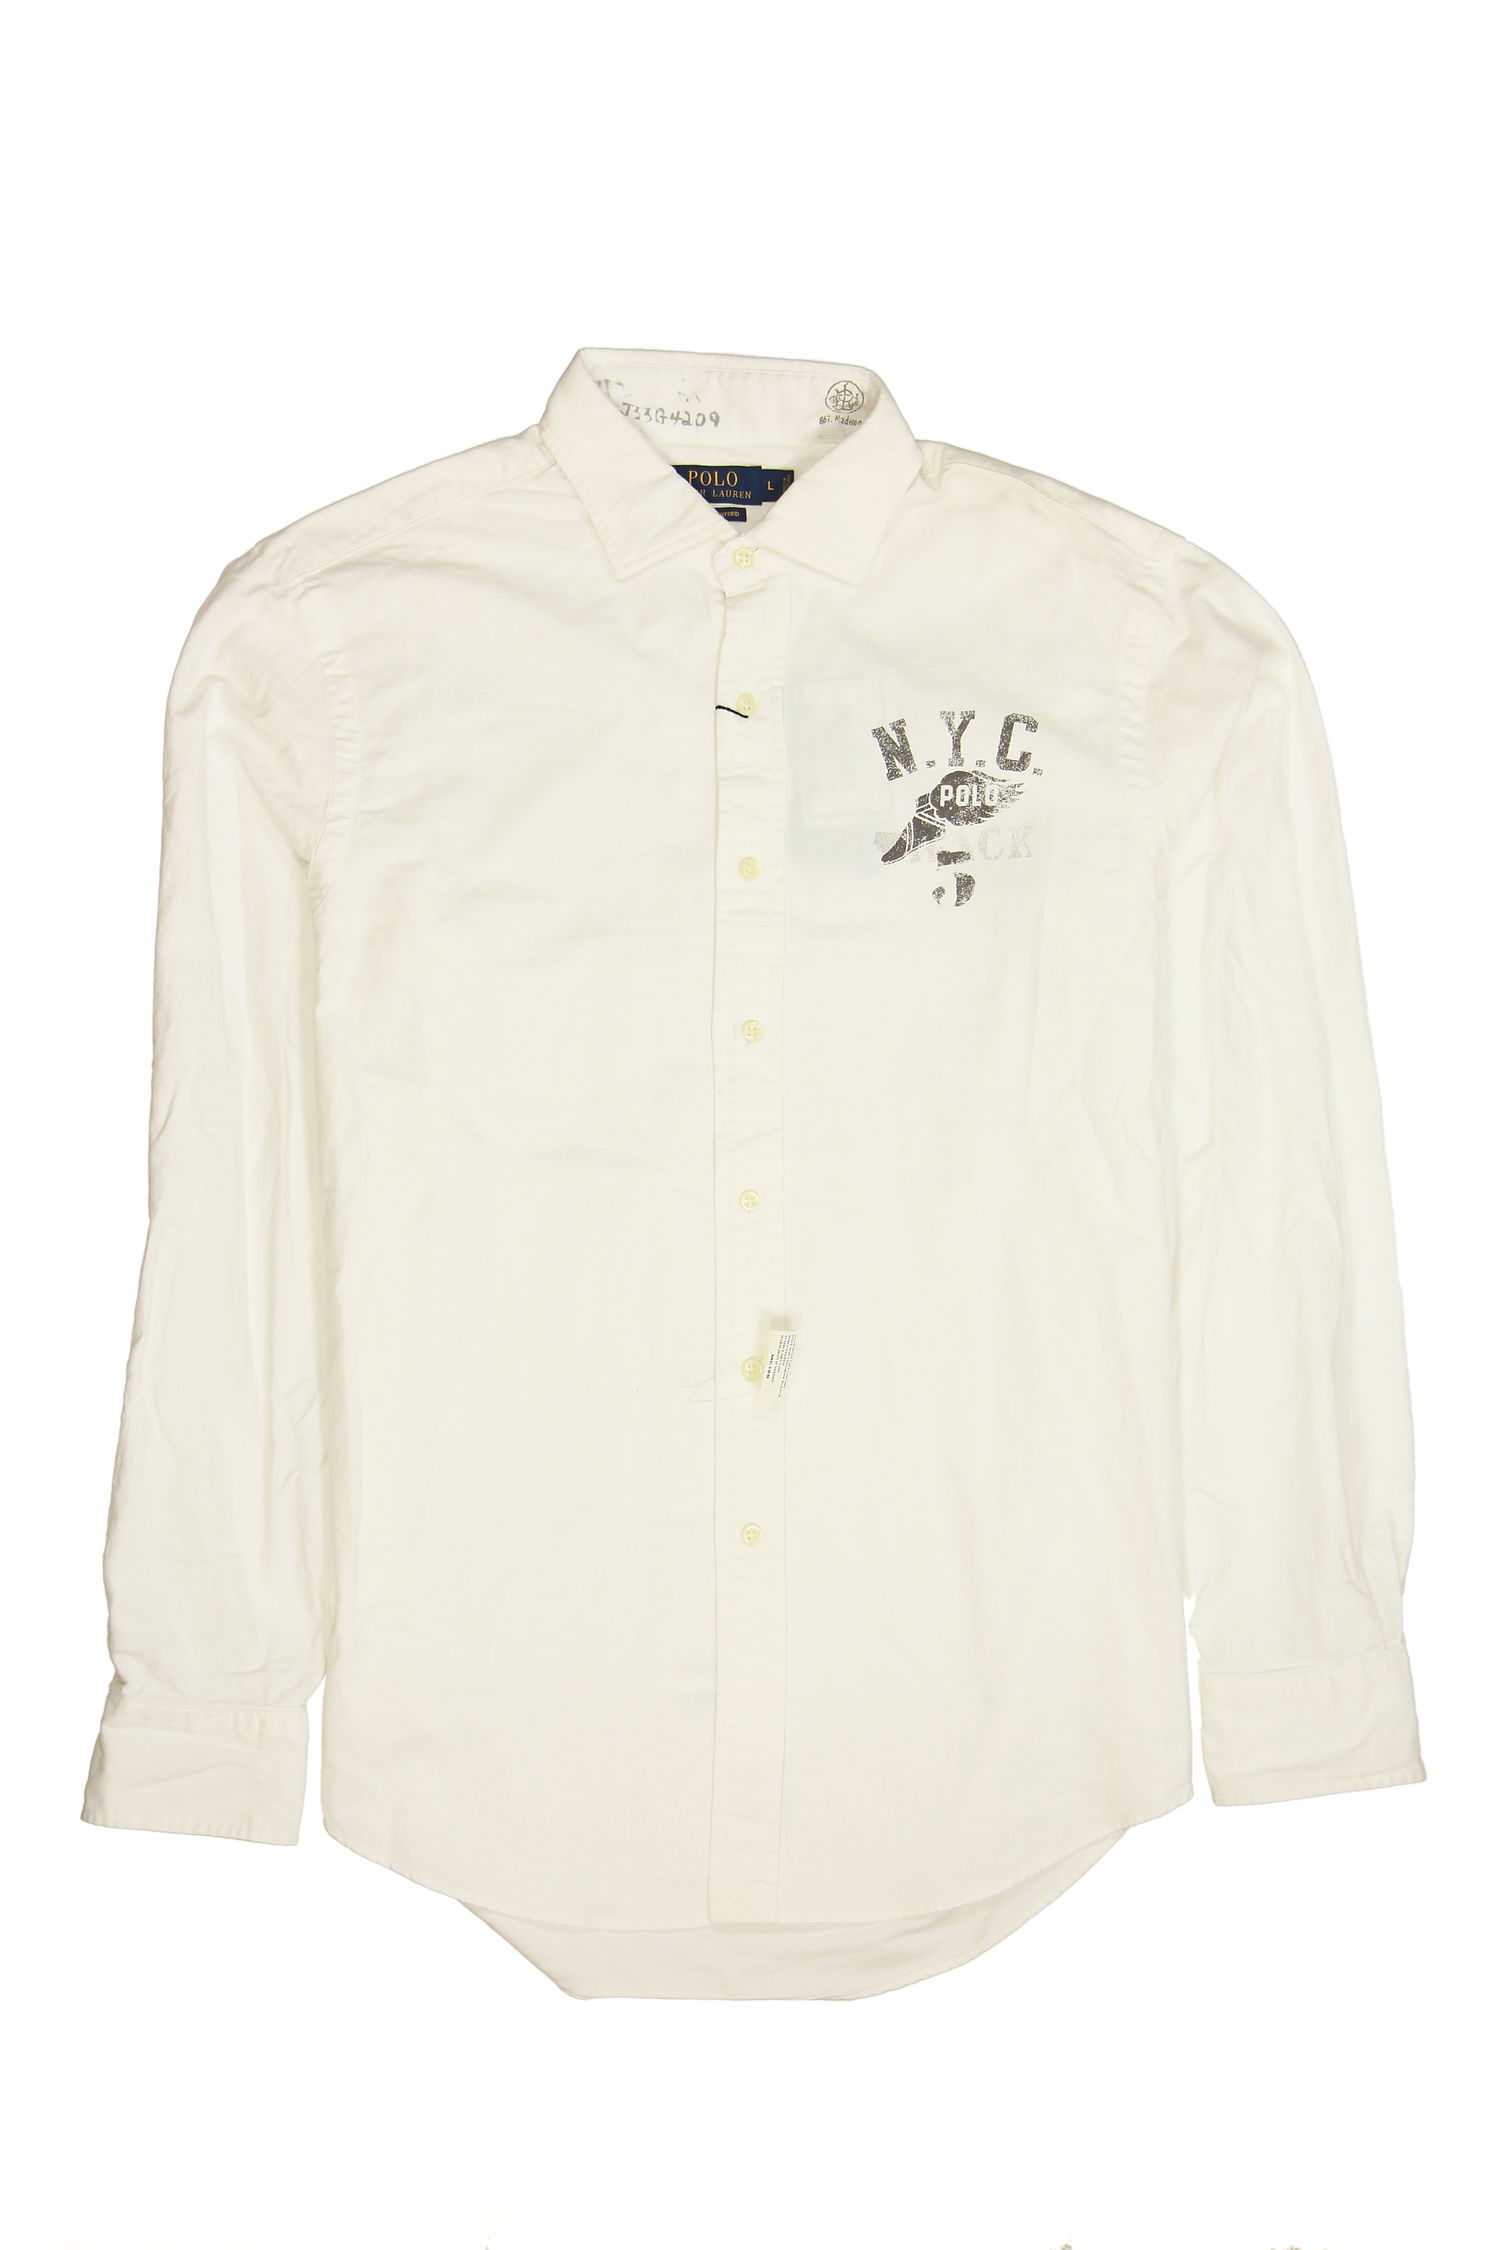 Ralph Lauren Polo Ralph Lauren White Button Down Shirt